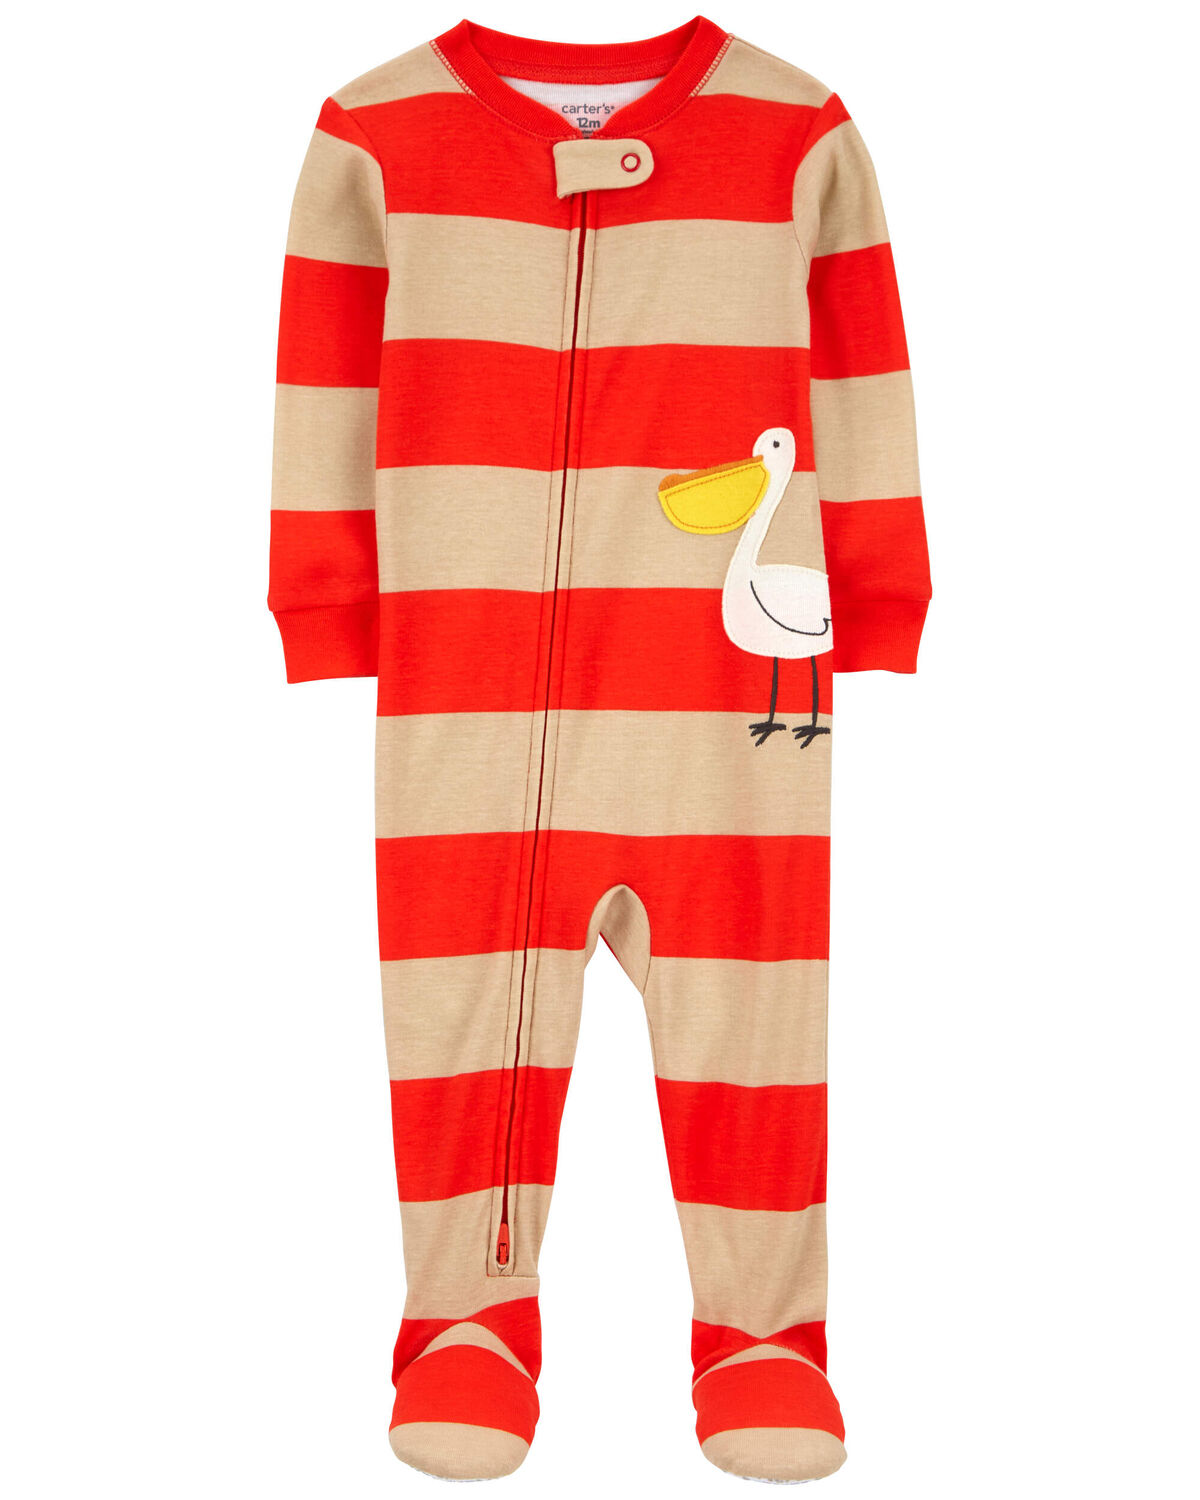 Baby 1-Piece Pelican 100% Snug Fit Cotton Footie Pajamas